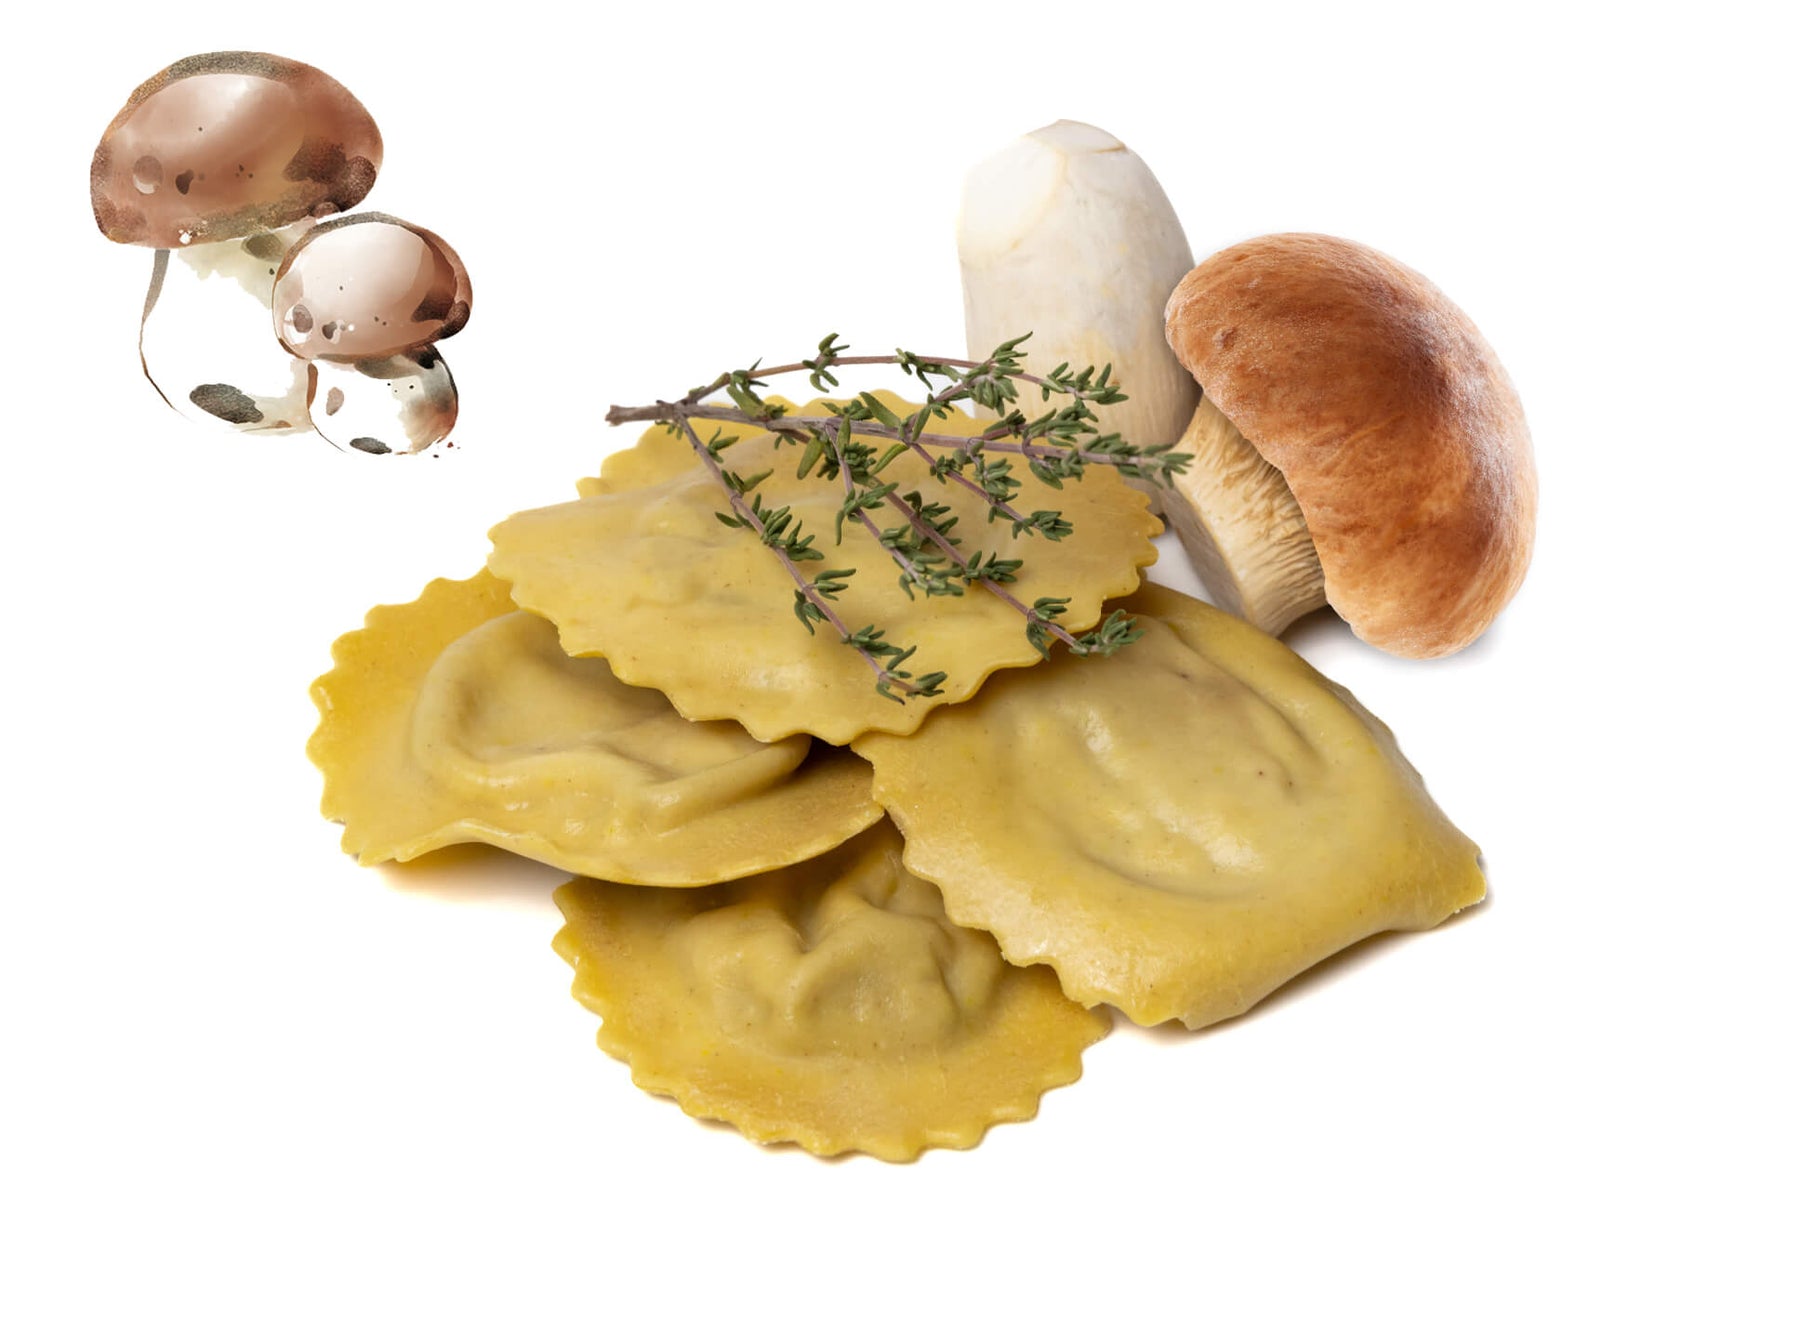 Medaglioni mit Steinpilz-Füllung, frische Pasta ohne Zusatzstoffe, 500g